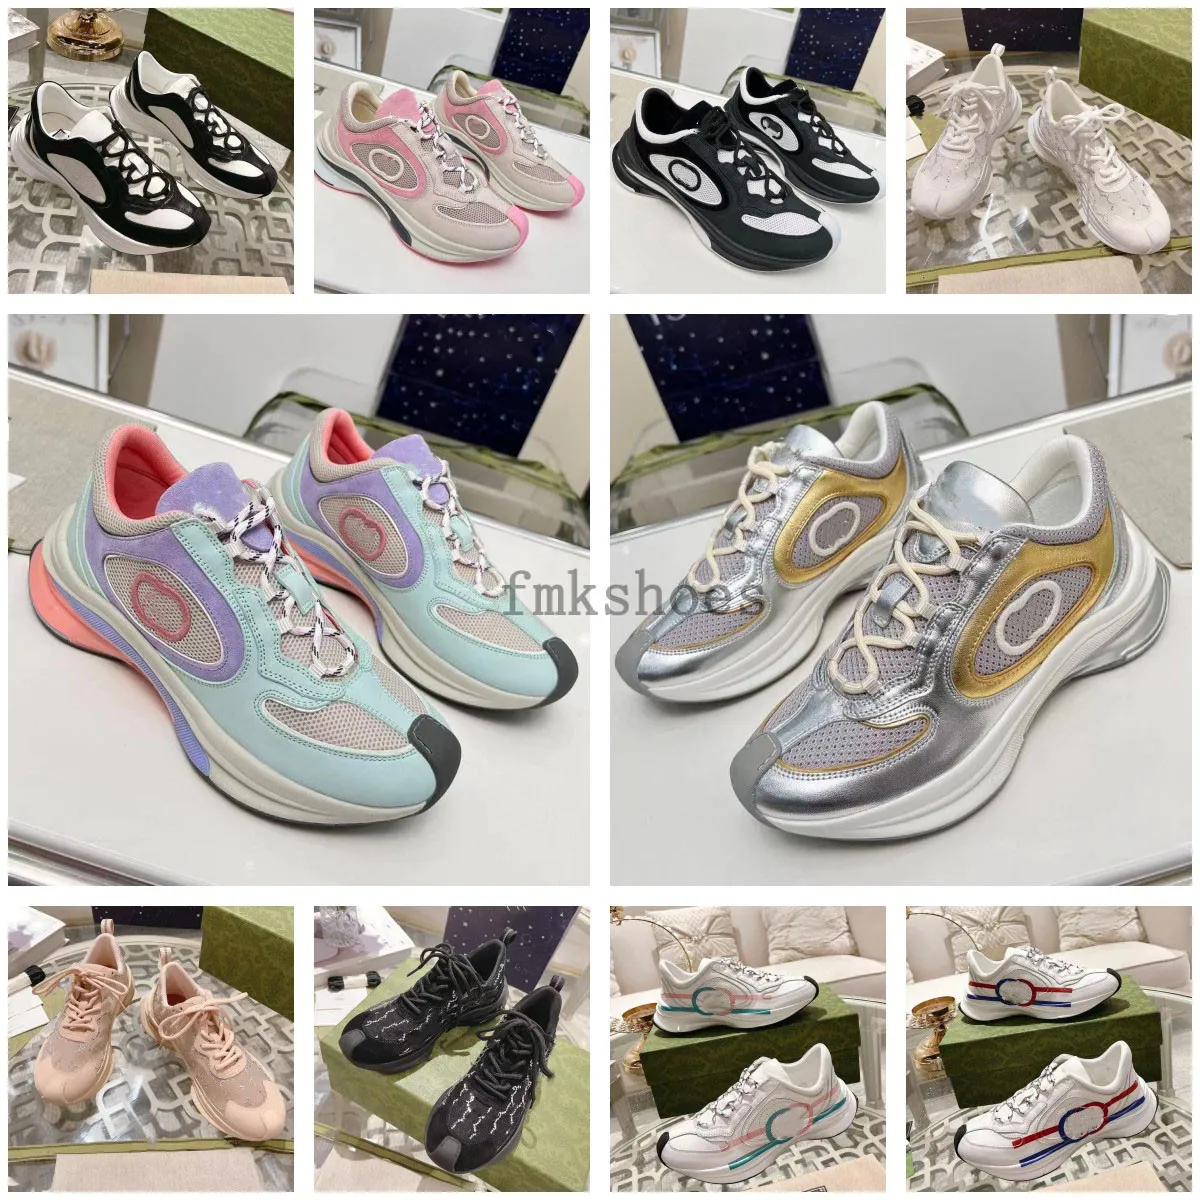 Chaussures de luxe Chaussures pour dames Rhyton Platform Sneakers Chaussures de créateurs Beige hommes femmes Baskets Designers Vintage RUN Sneaker taille 35-45 3.20 01